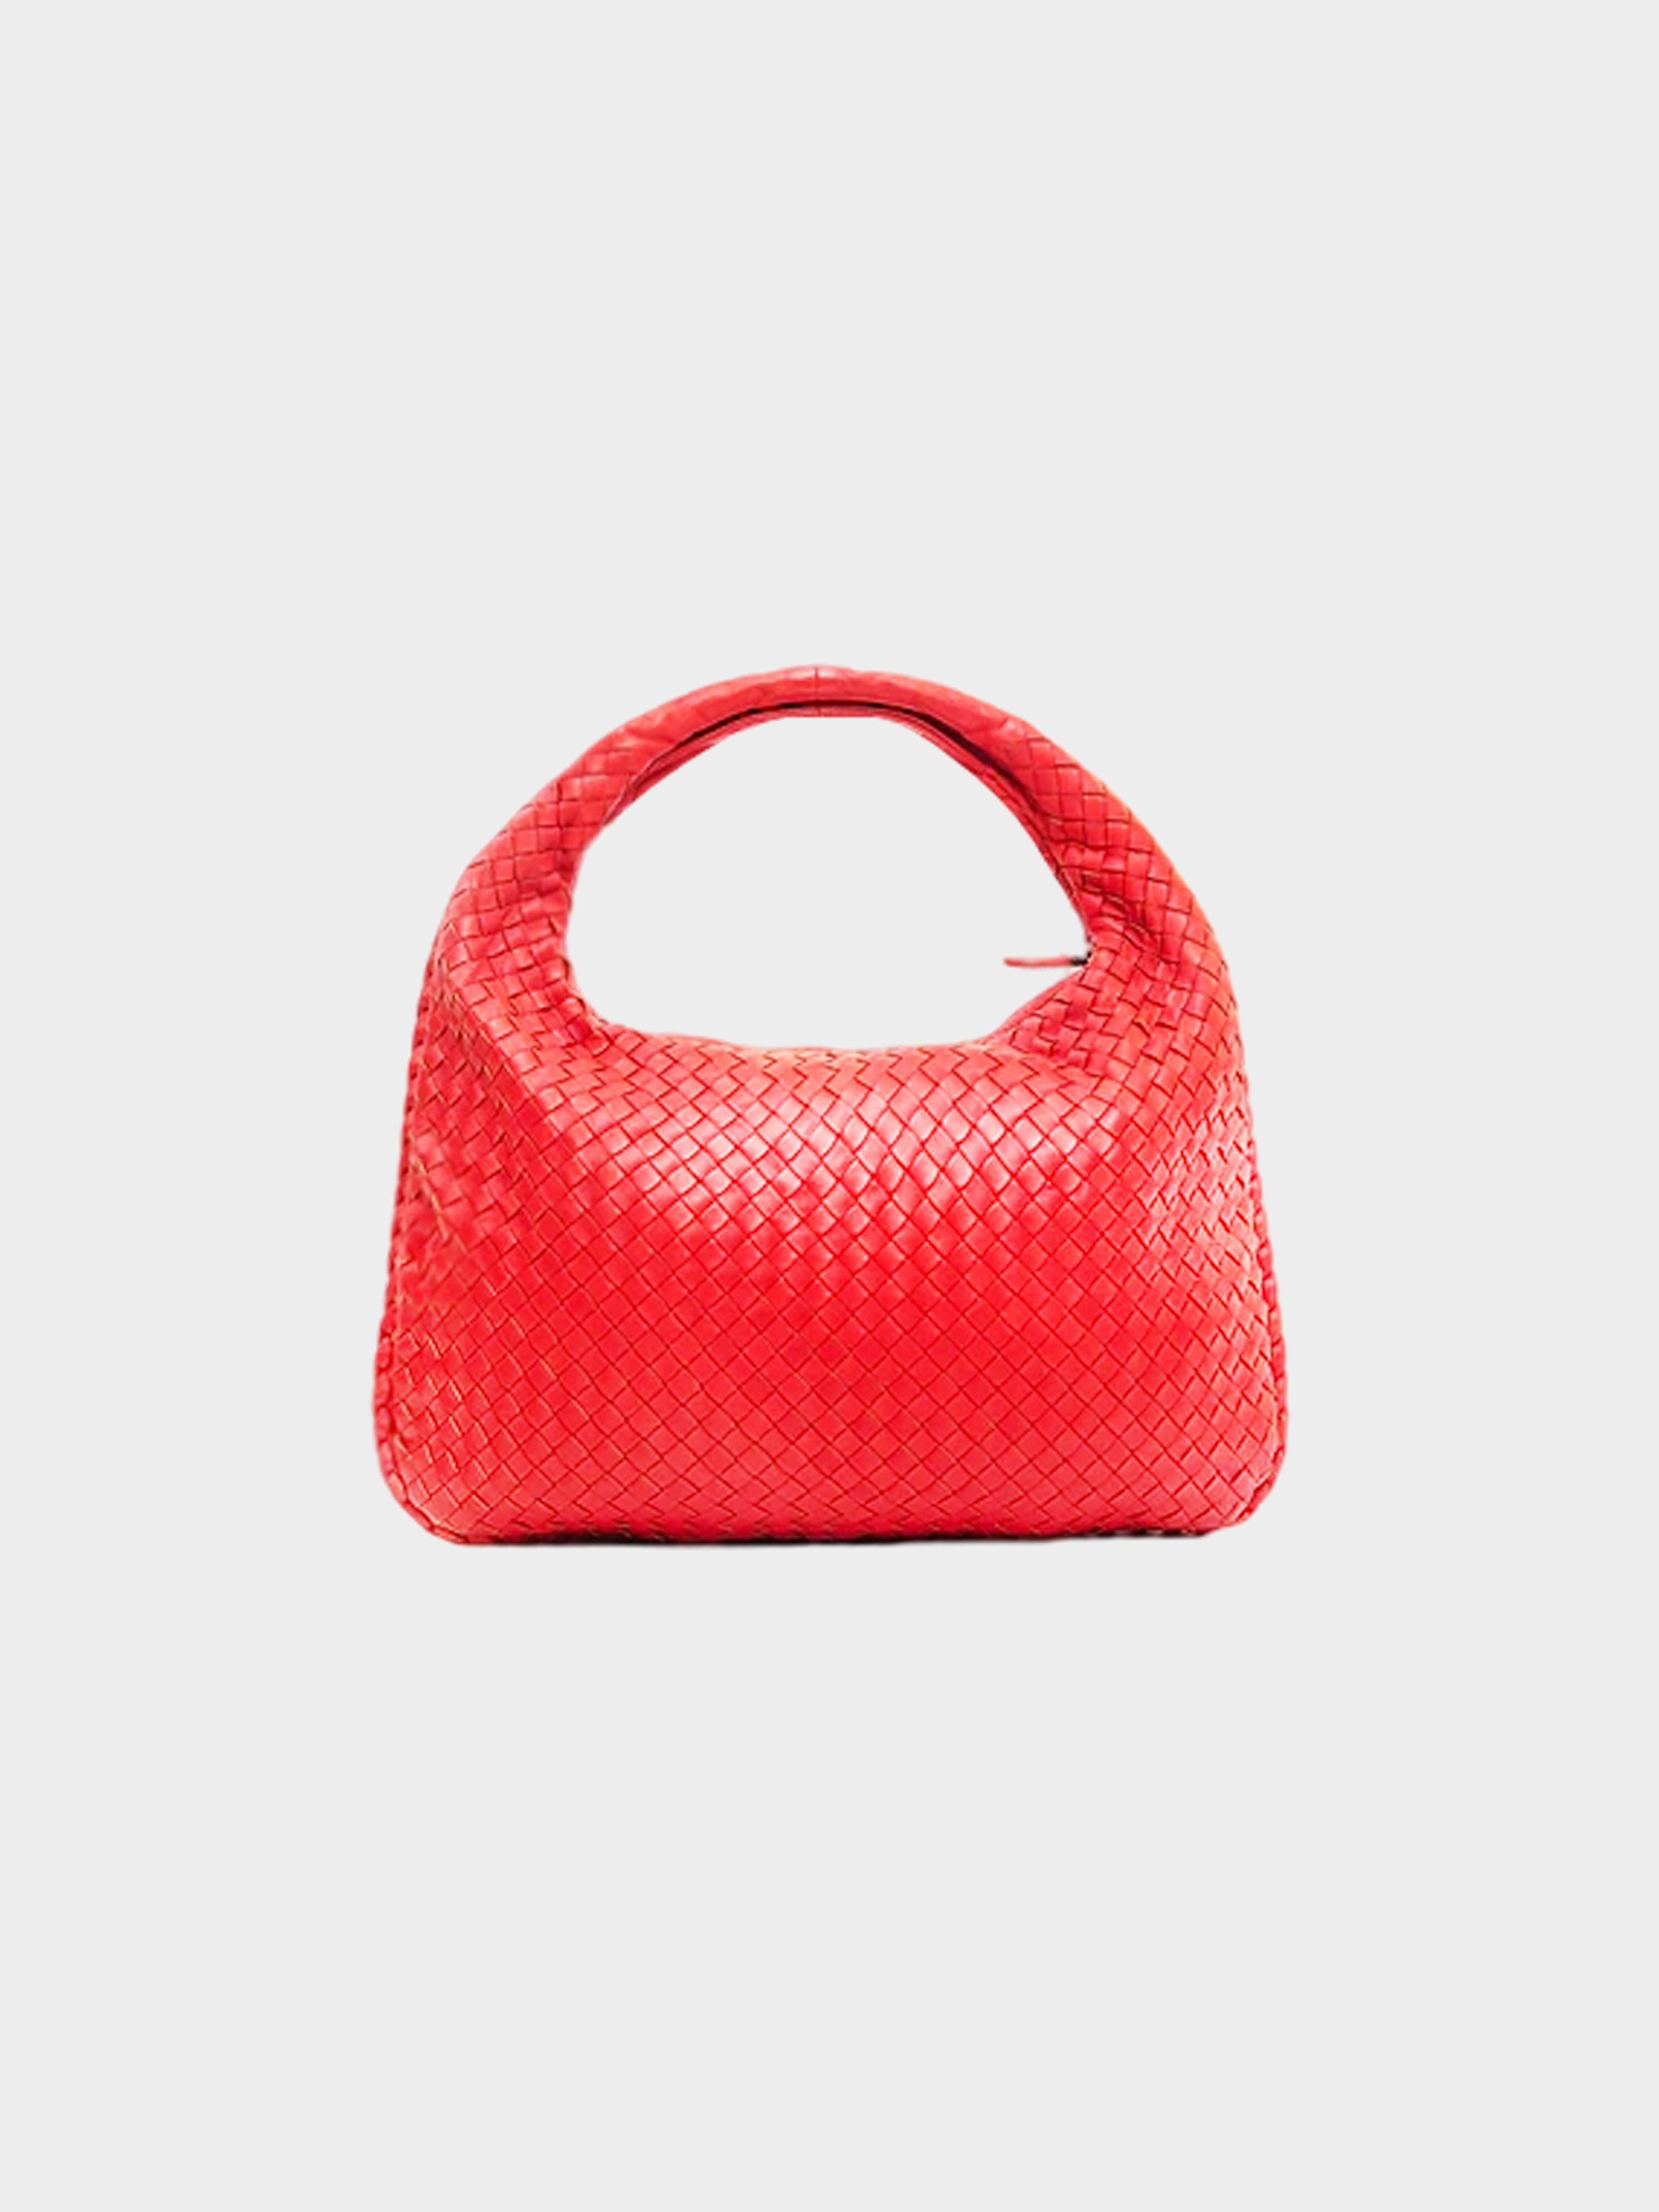 Bottega Veneta 2020s Orange Intrecciato Handbag